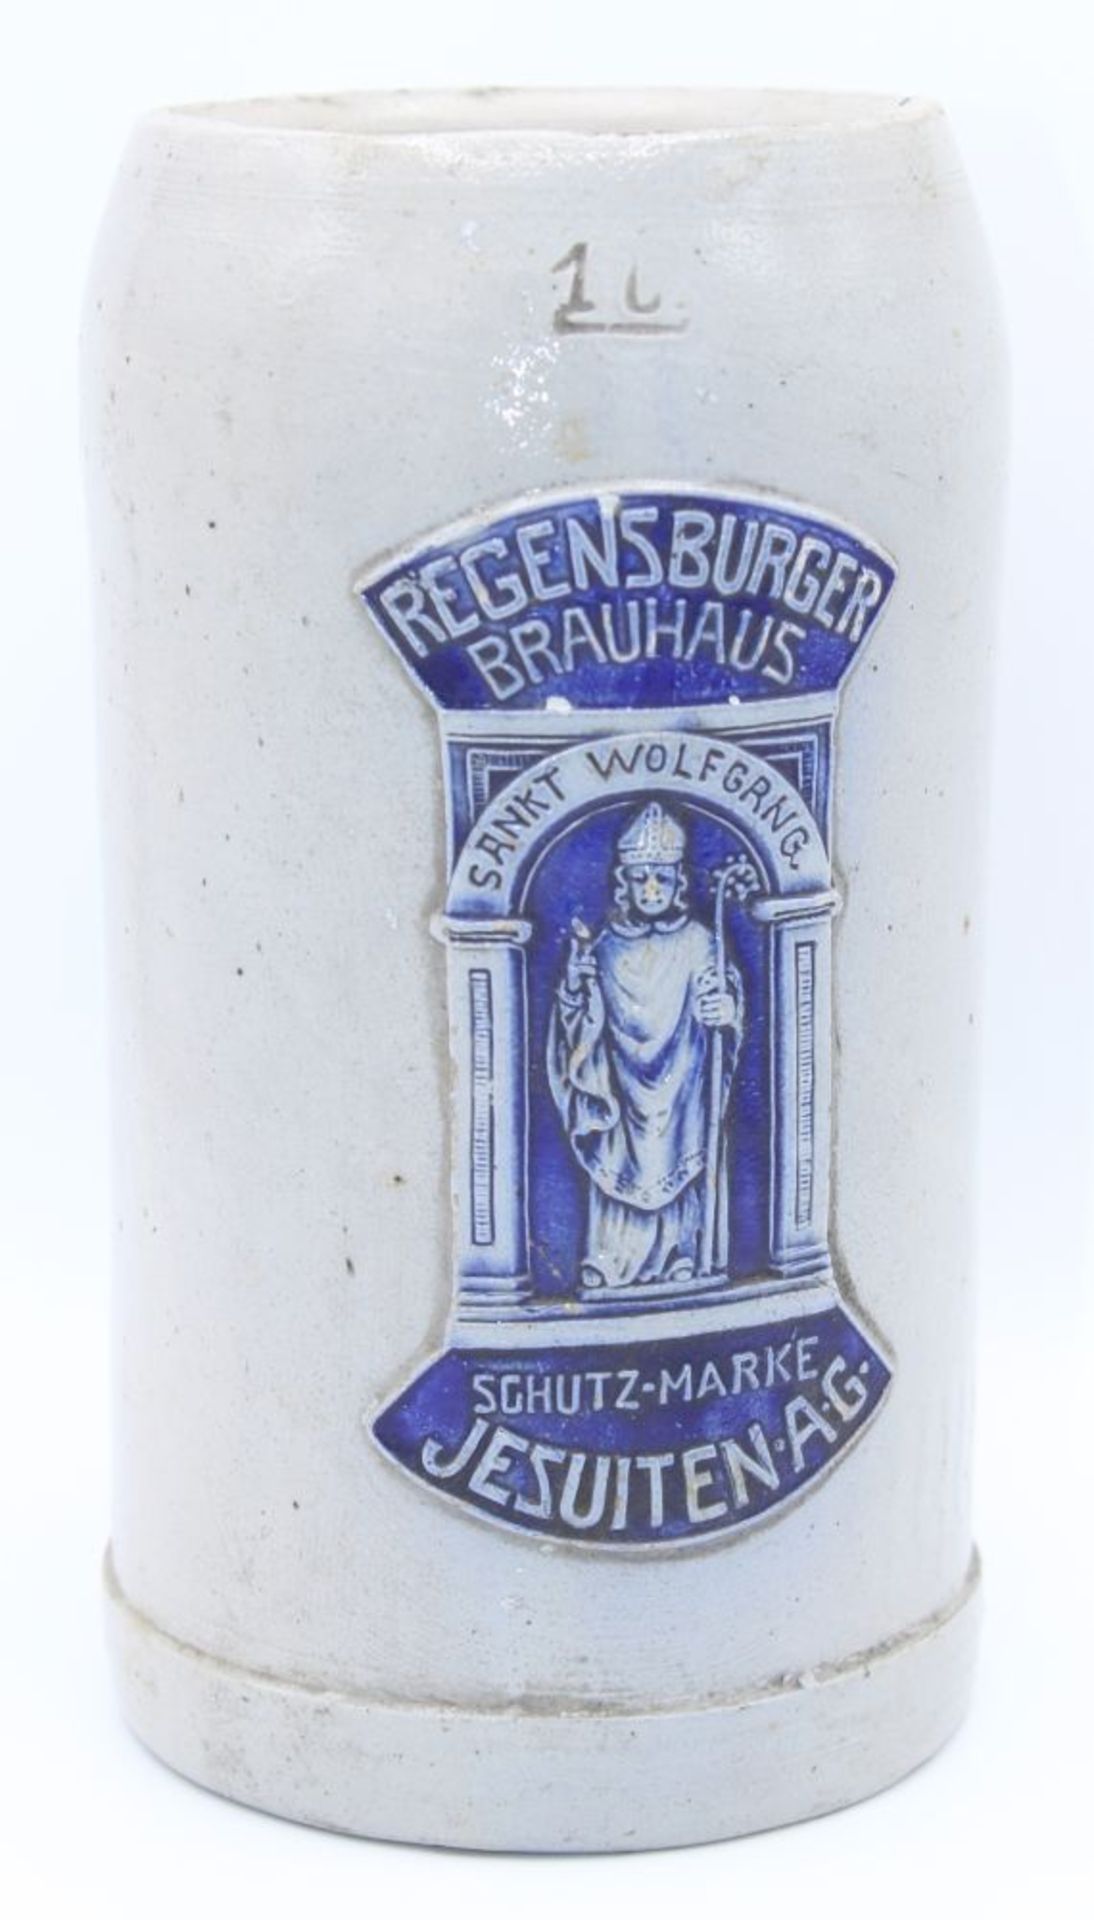 Alter Bierkrug Regensburger Brauhaus, Schutz-Marke Jesuiten AG, zentrale Darstellung mit Sankt